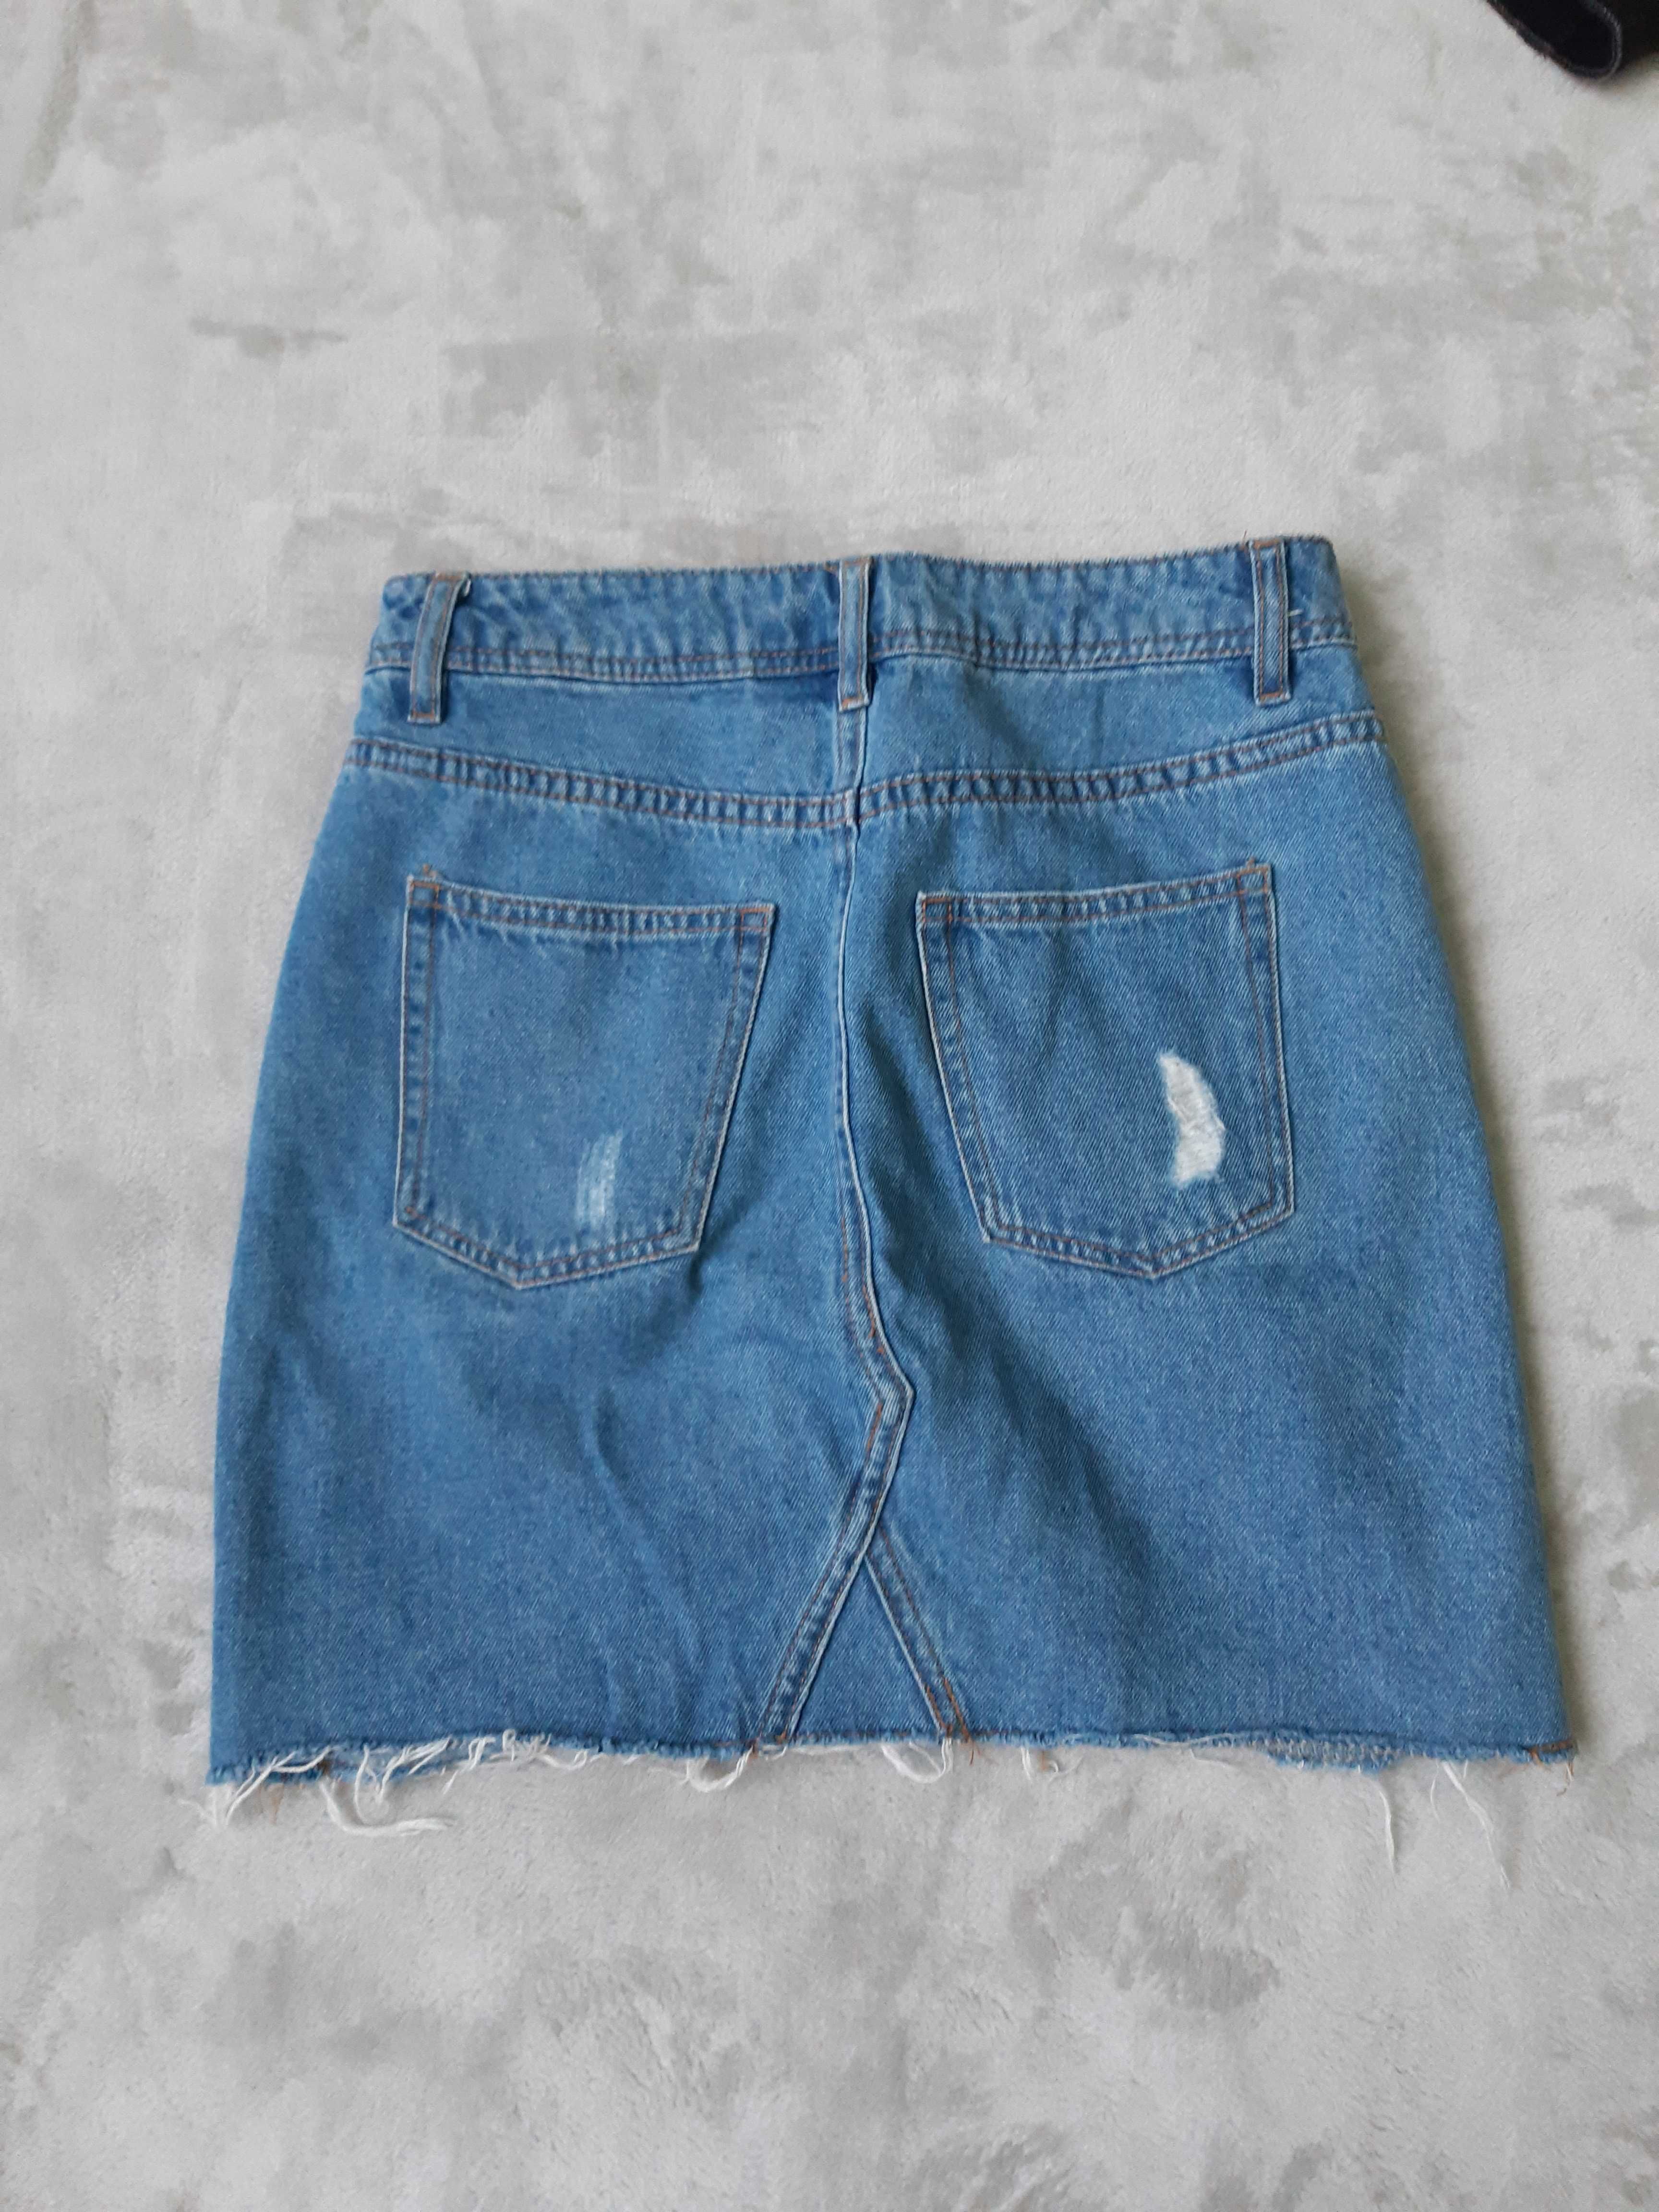 2 джинсовые юбки по цене одной